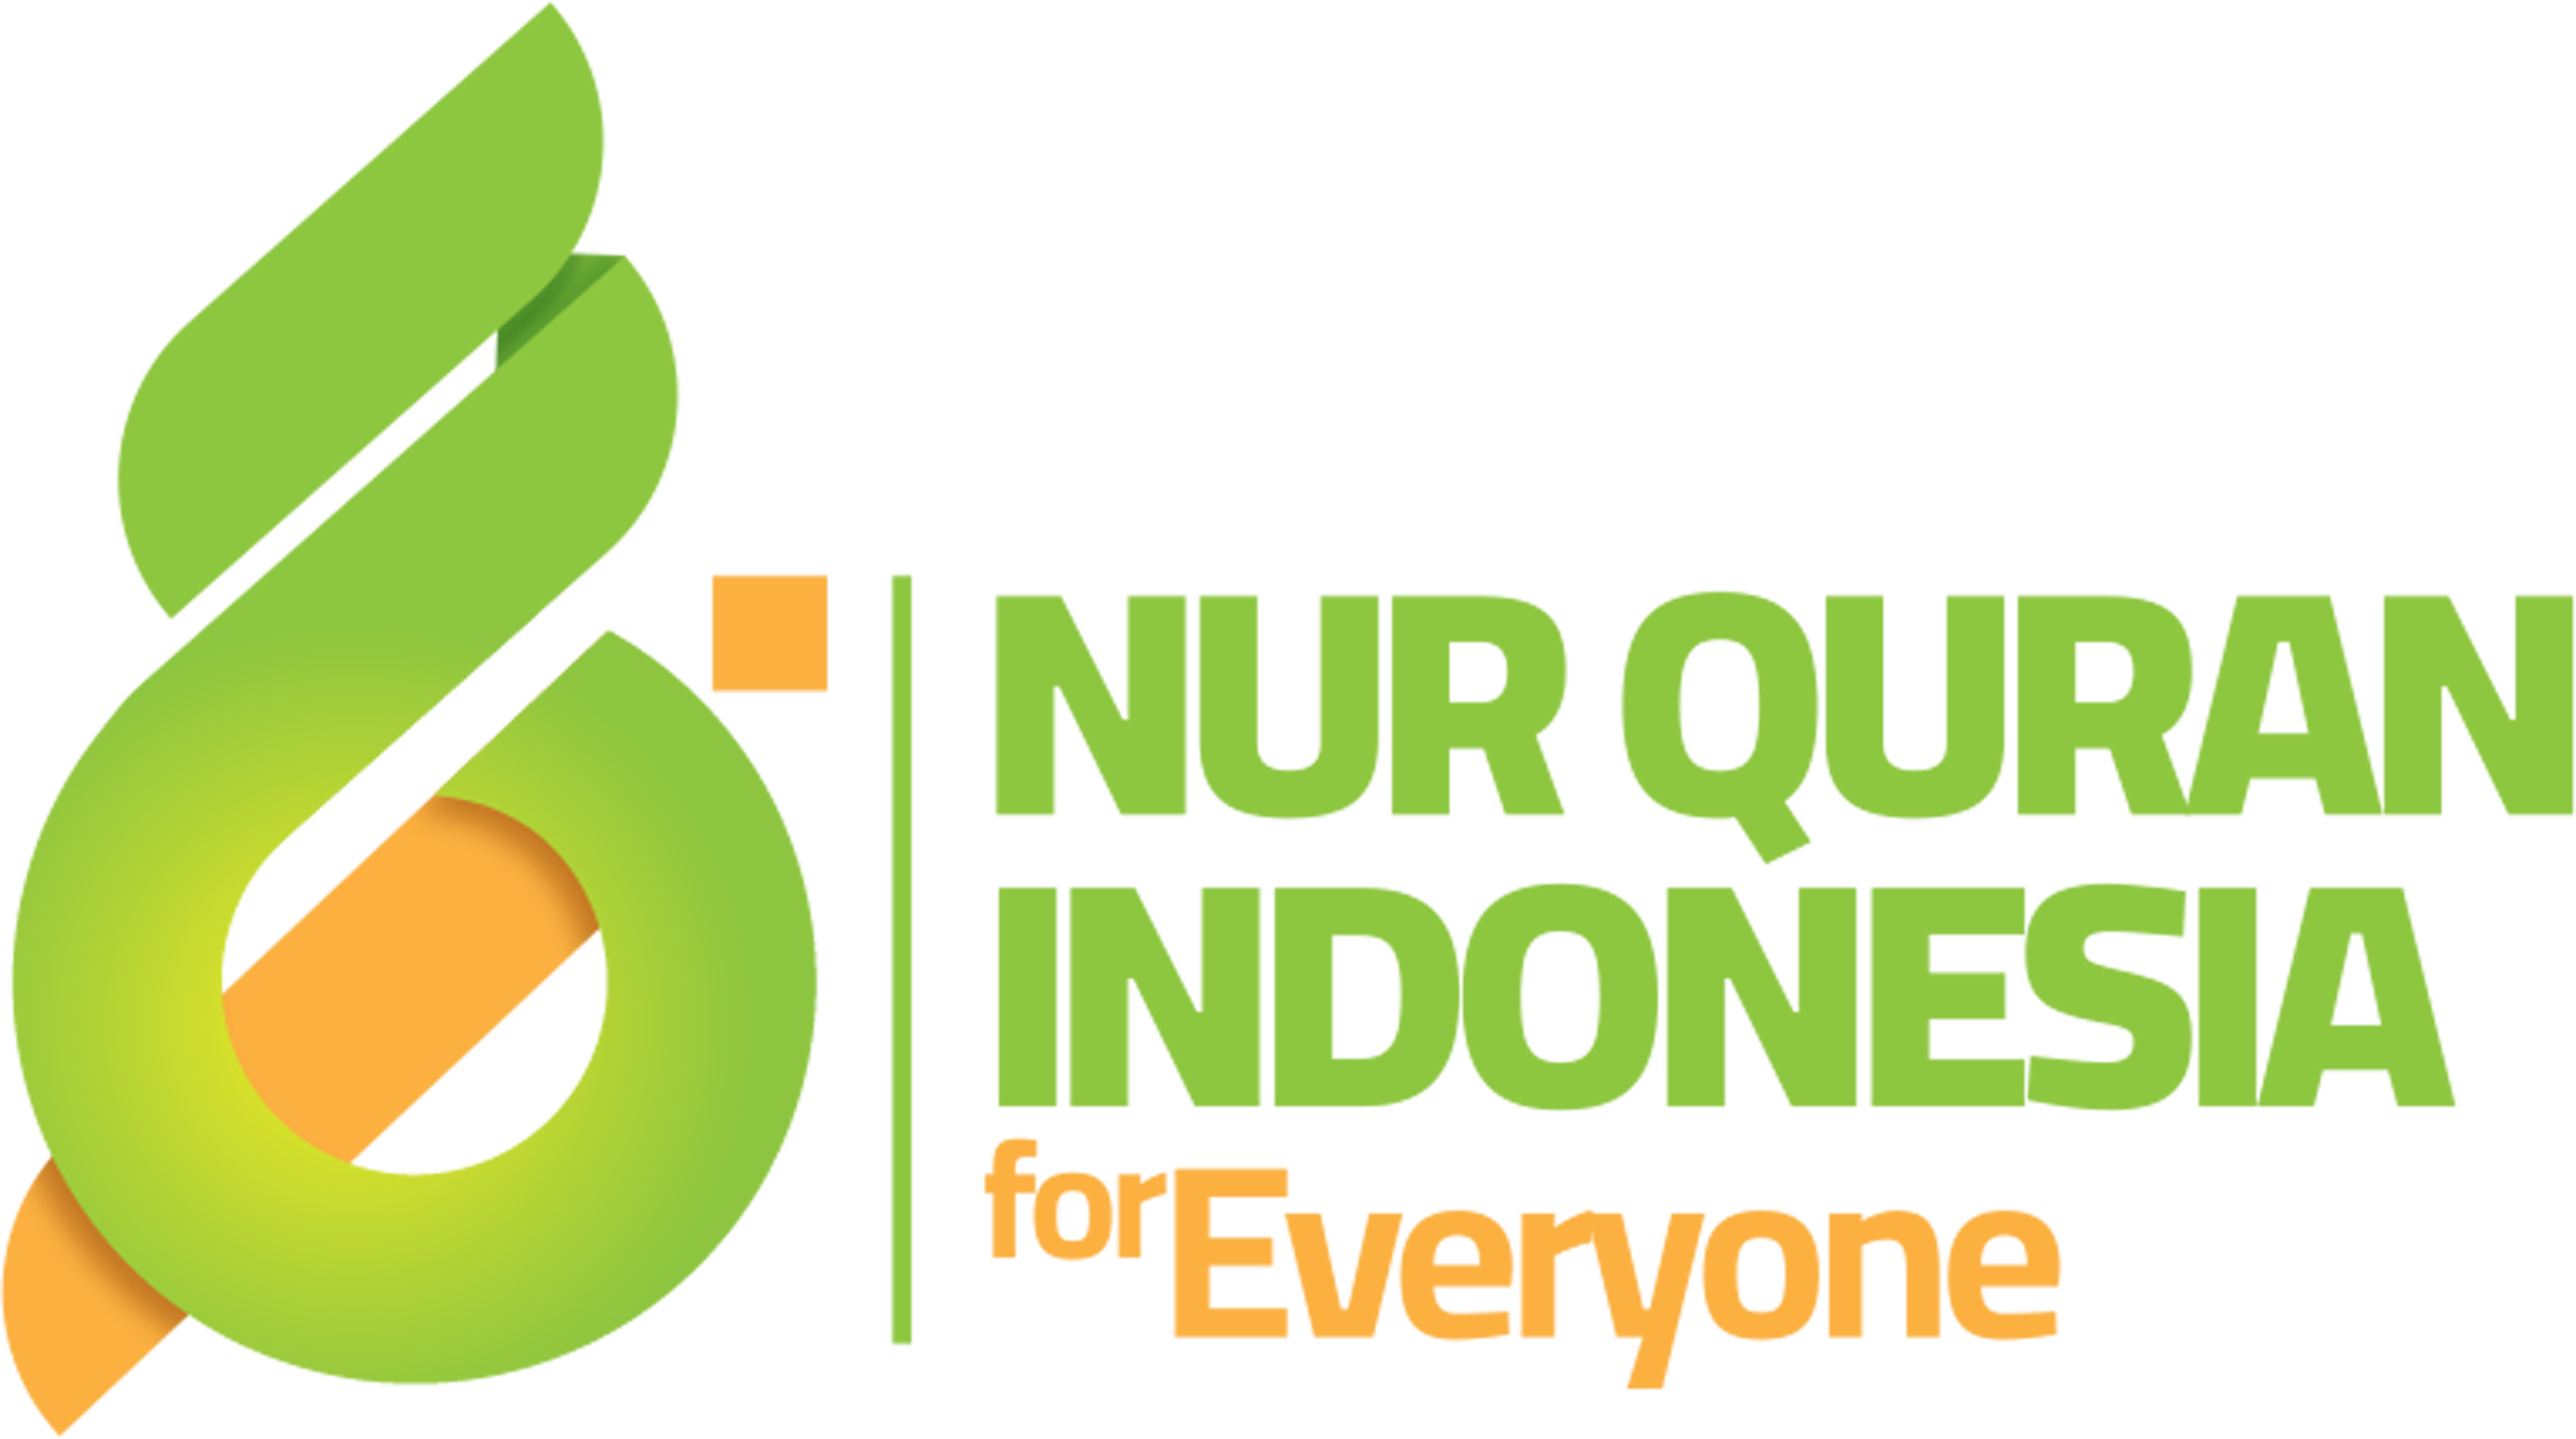 Nur Quran Indonesia merencanakan Program Quran Sejuta Umat - Nur Quran ...